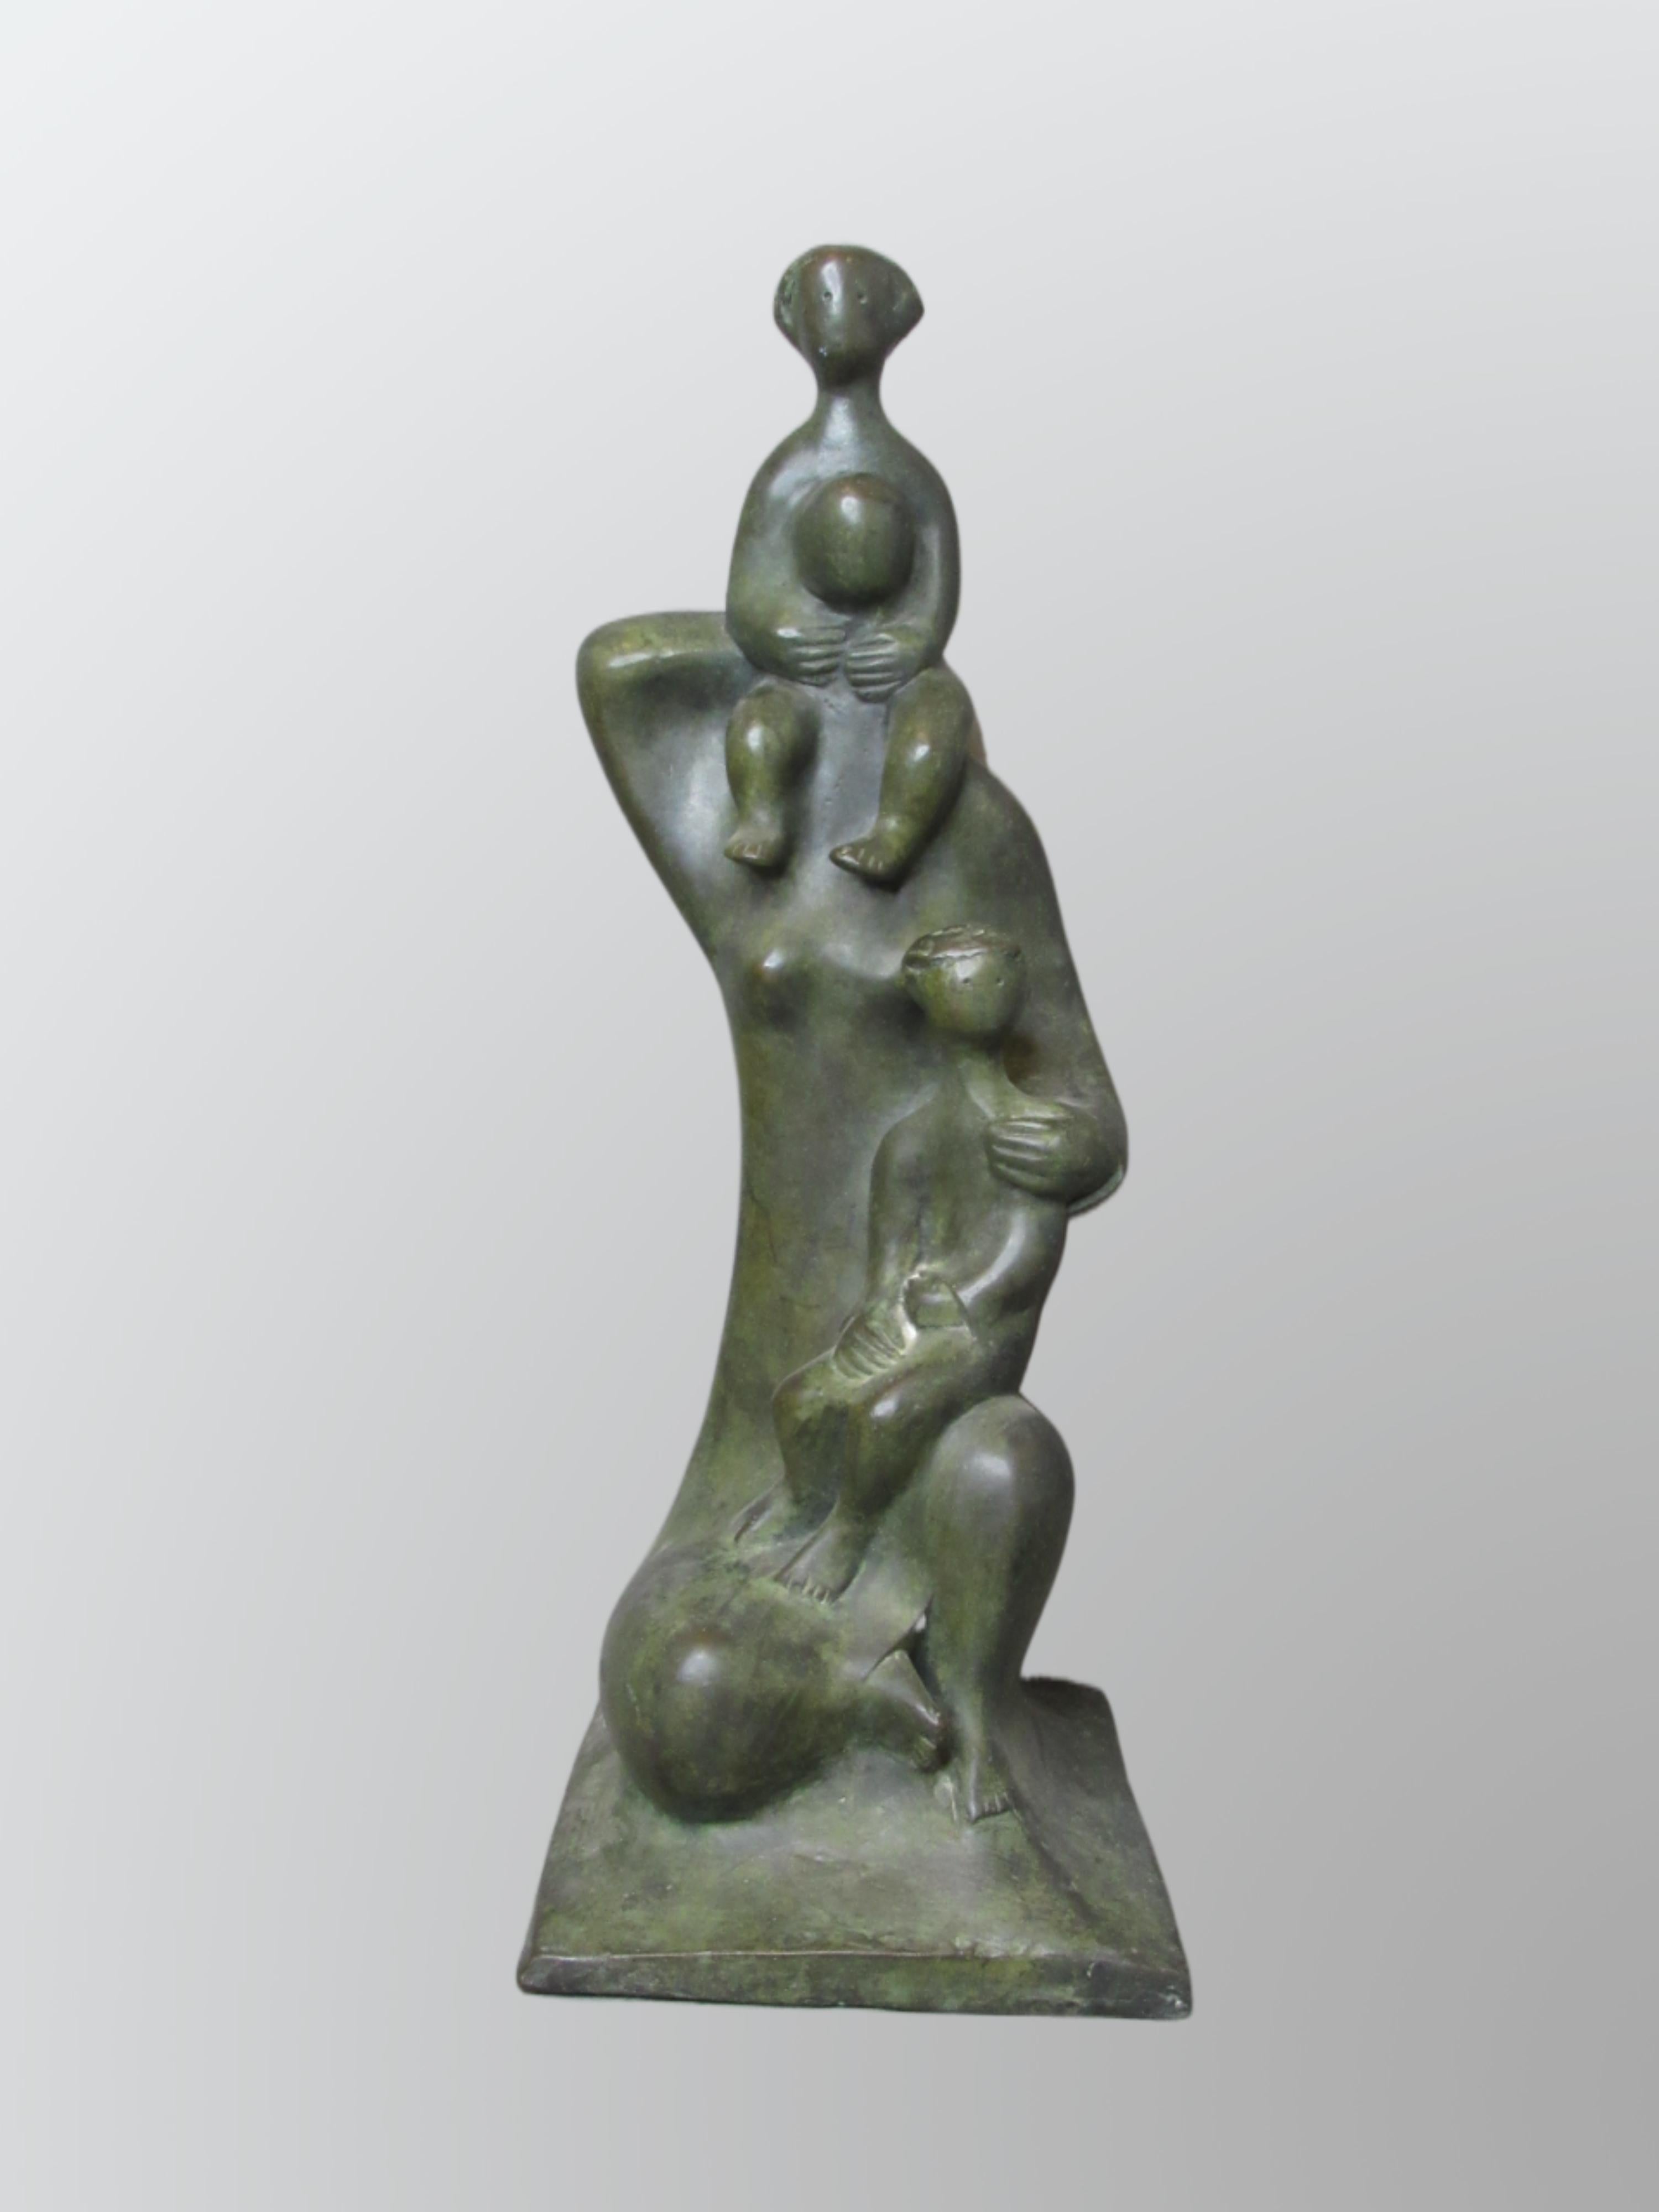 Dani Daniel Kafri Figurative Sculpture - Daniel Kafri, "Family", 1989, bronze sculpture, 27x17x19 cm